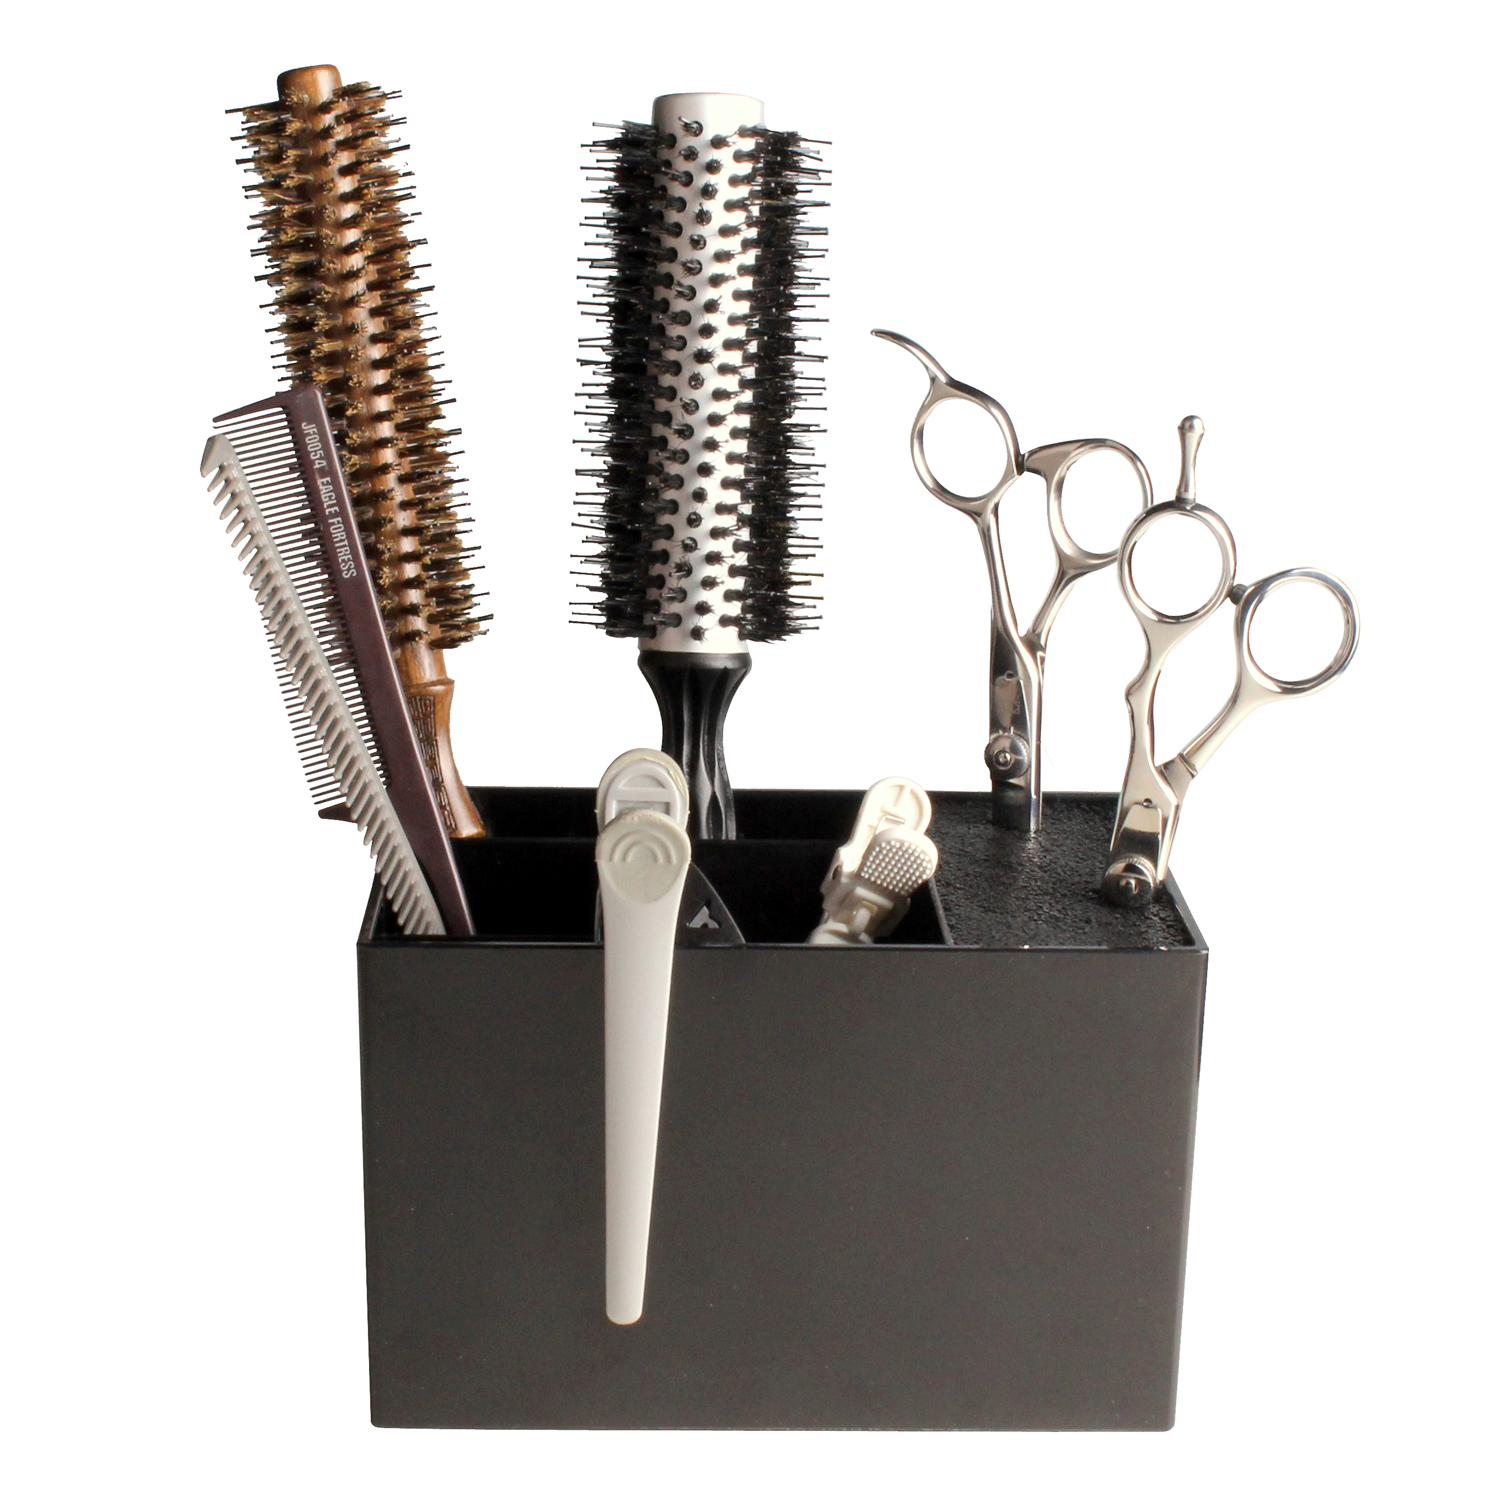 Универсальная подставка для ножниц и других парикмахерских принадлежностей.